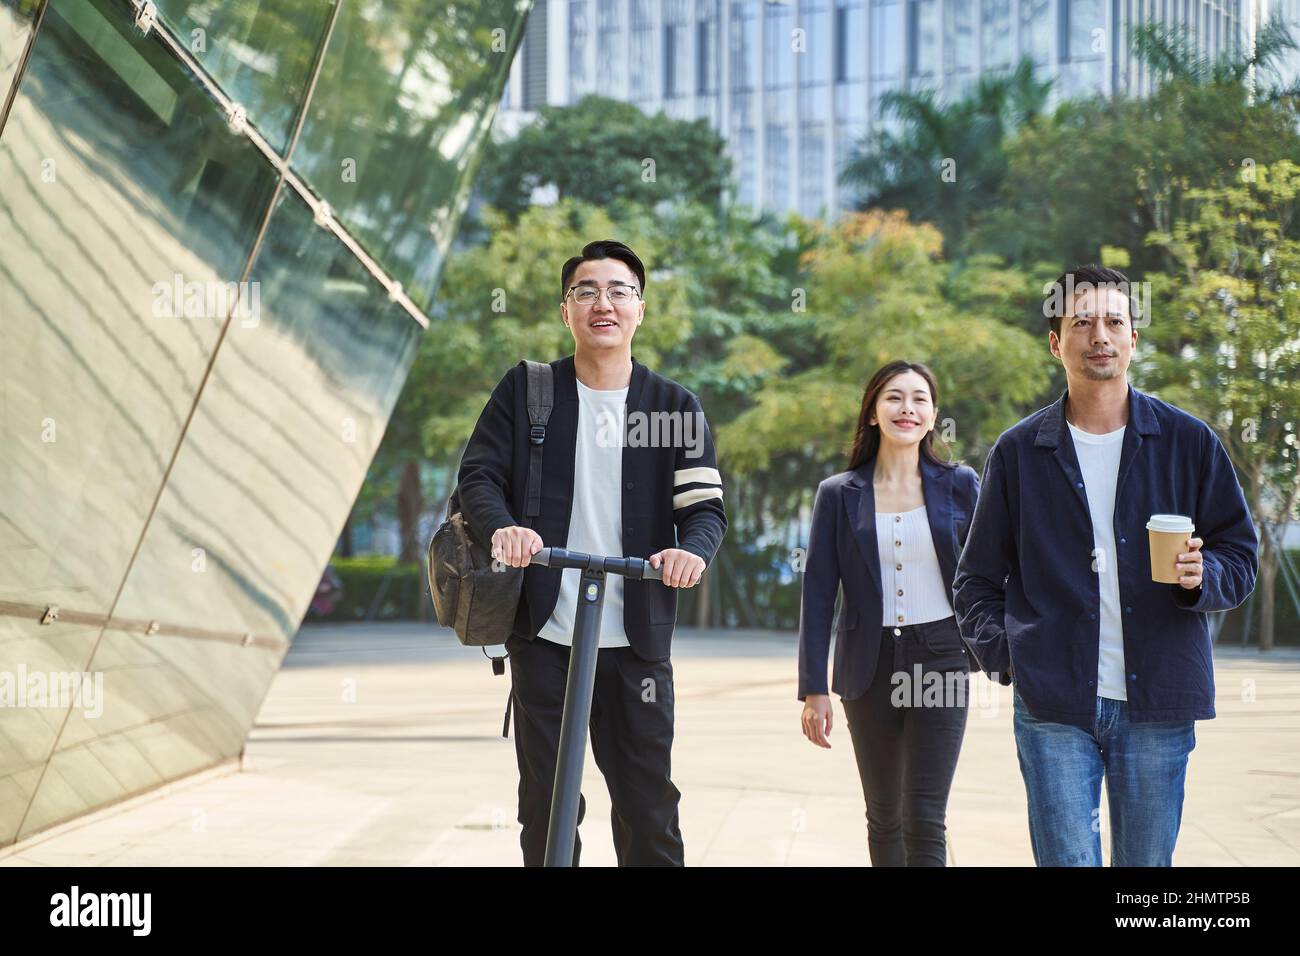 Drei junge asiatische Erwachsene, zwei Männer und eine Frau, die glücklich und lächelnd auf der Straße unterwegs sind Stockfoto